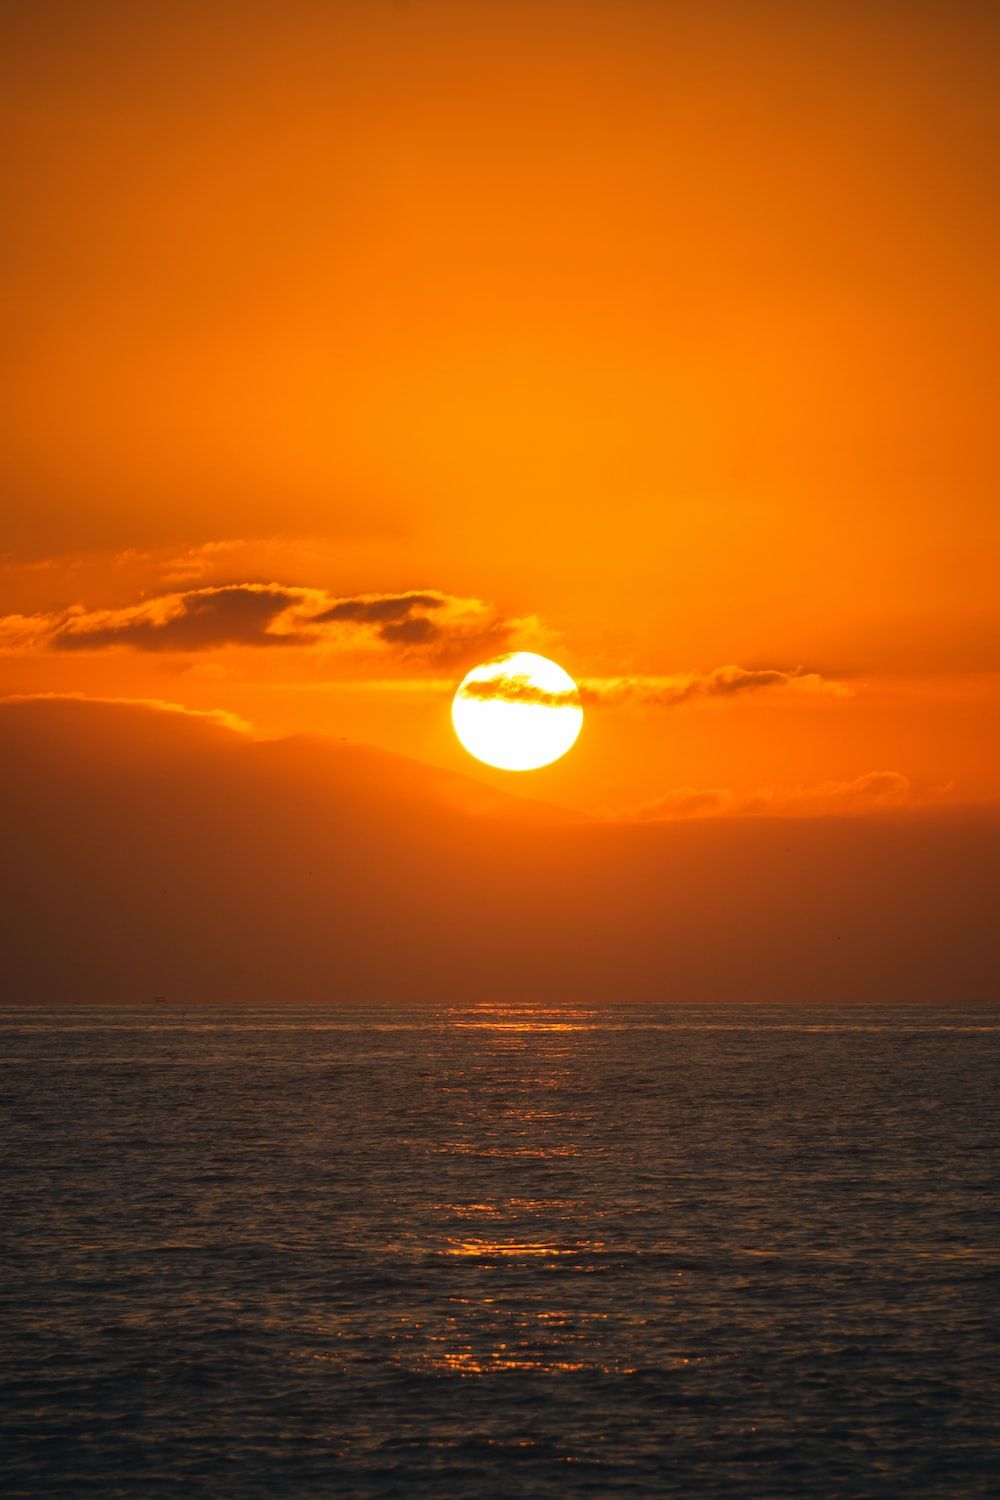 The sun setting over the ocean - Sun